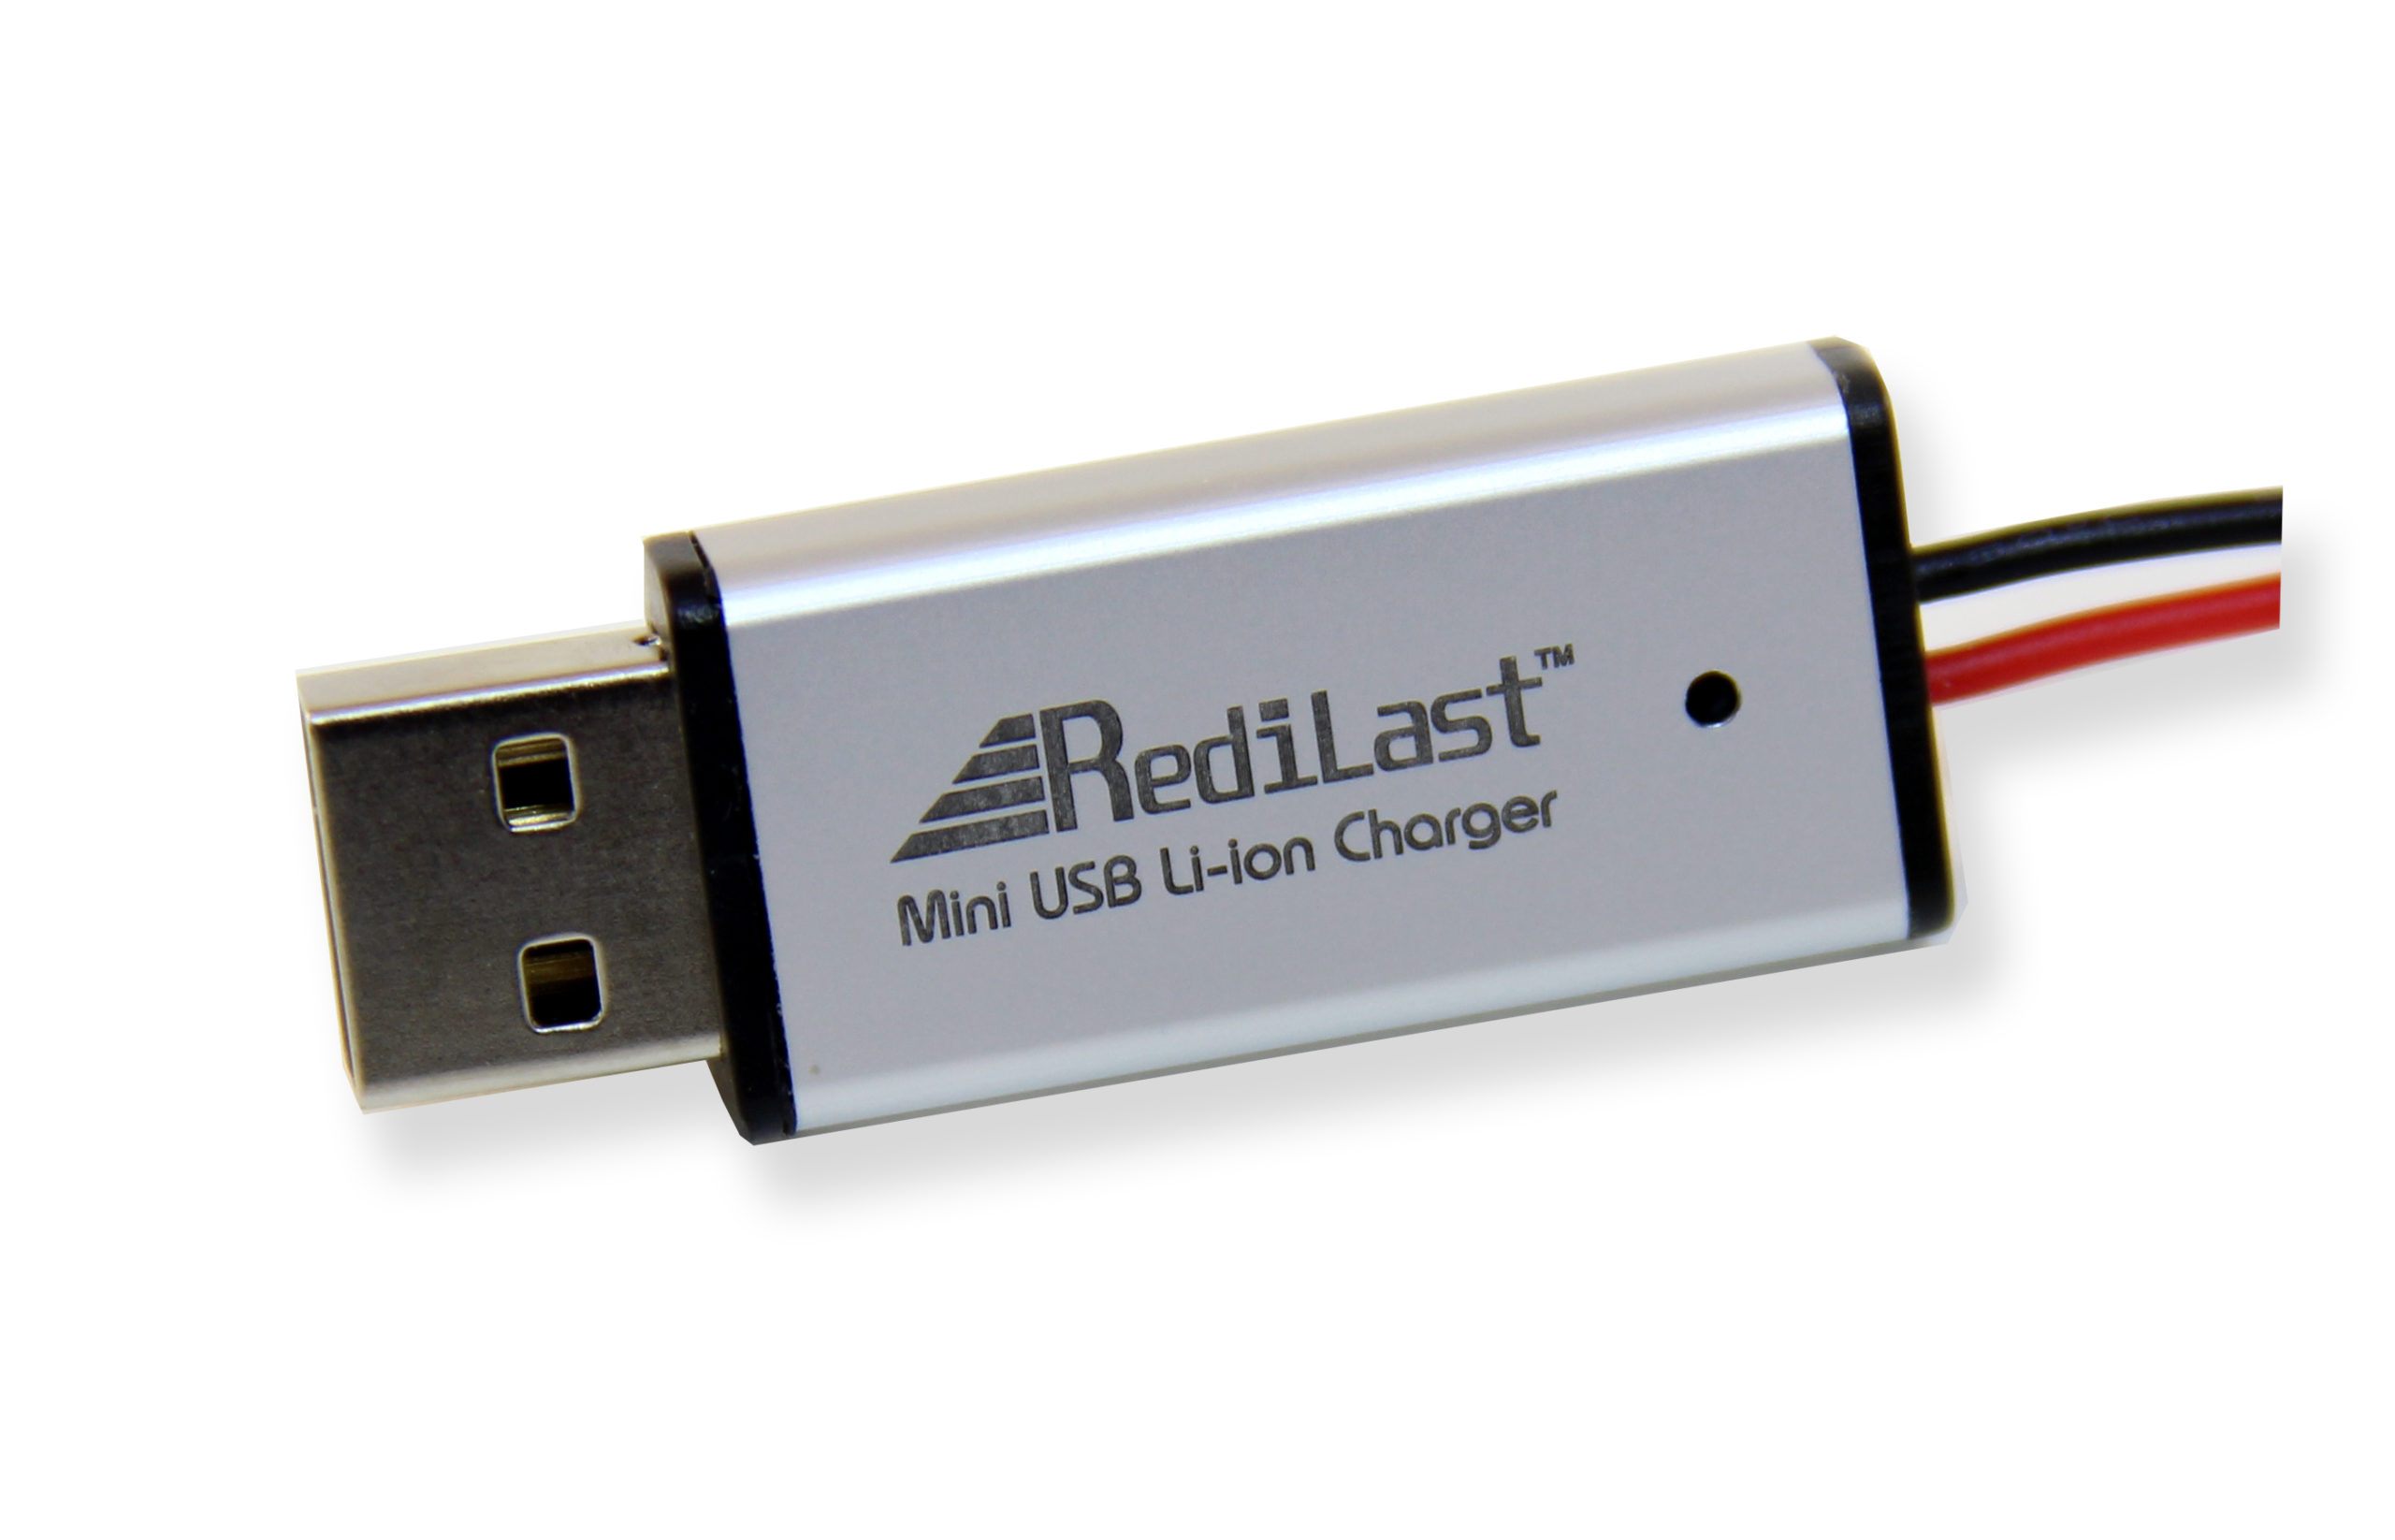 Redilast Mini USB Li-ion Charger (250mA)